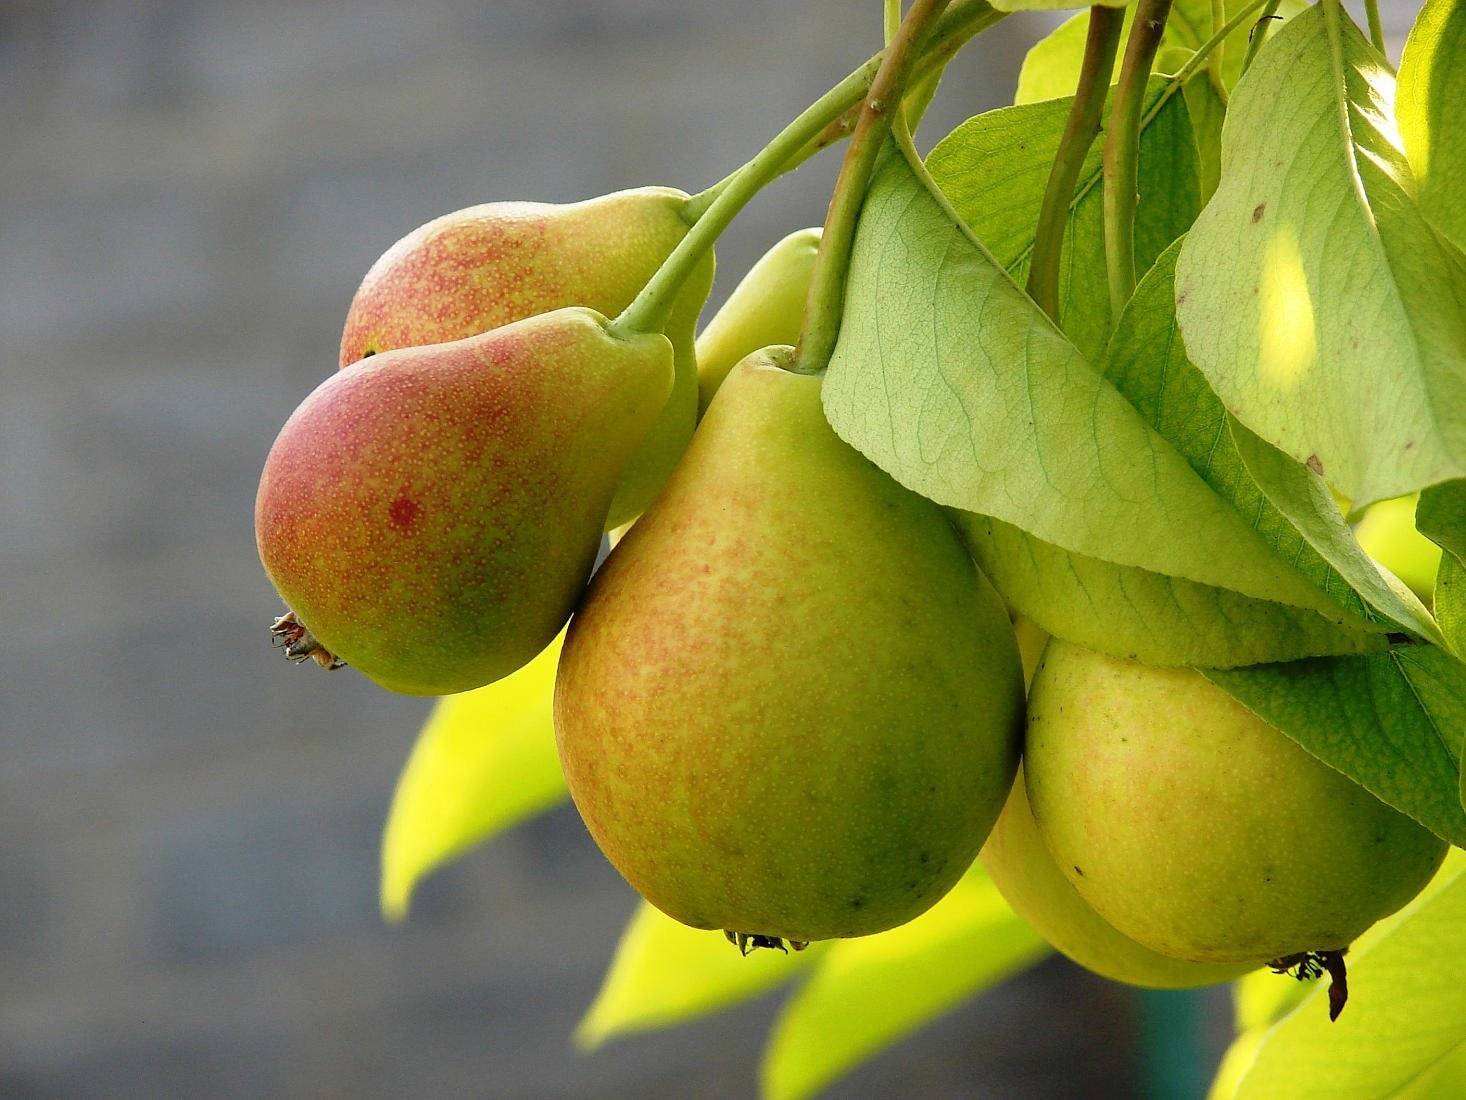 Груша рогнеда: описание сорта, фото плодов, рекомендации по выращиванию selo.guru — интернет портал о сельском хозяйстве